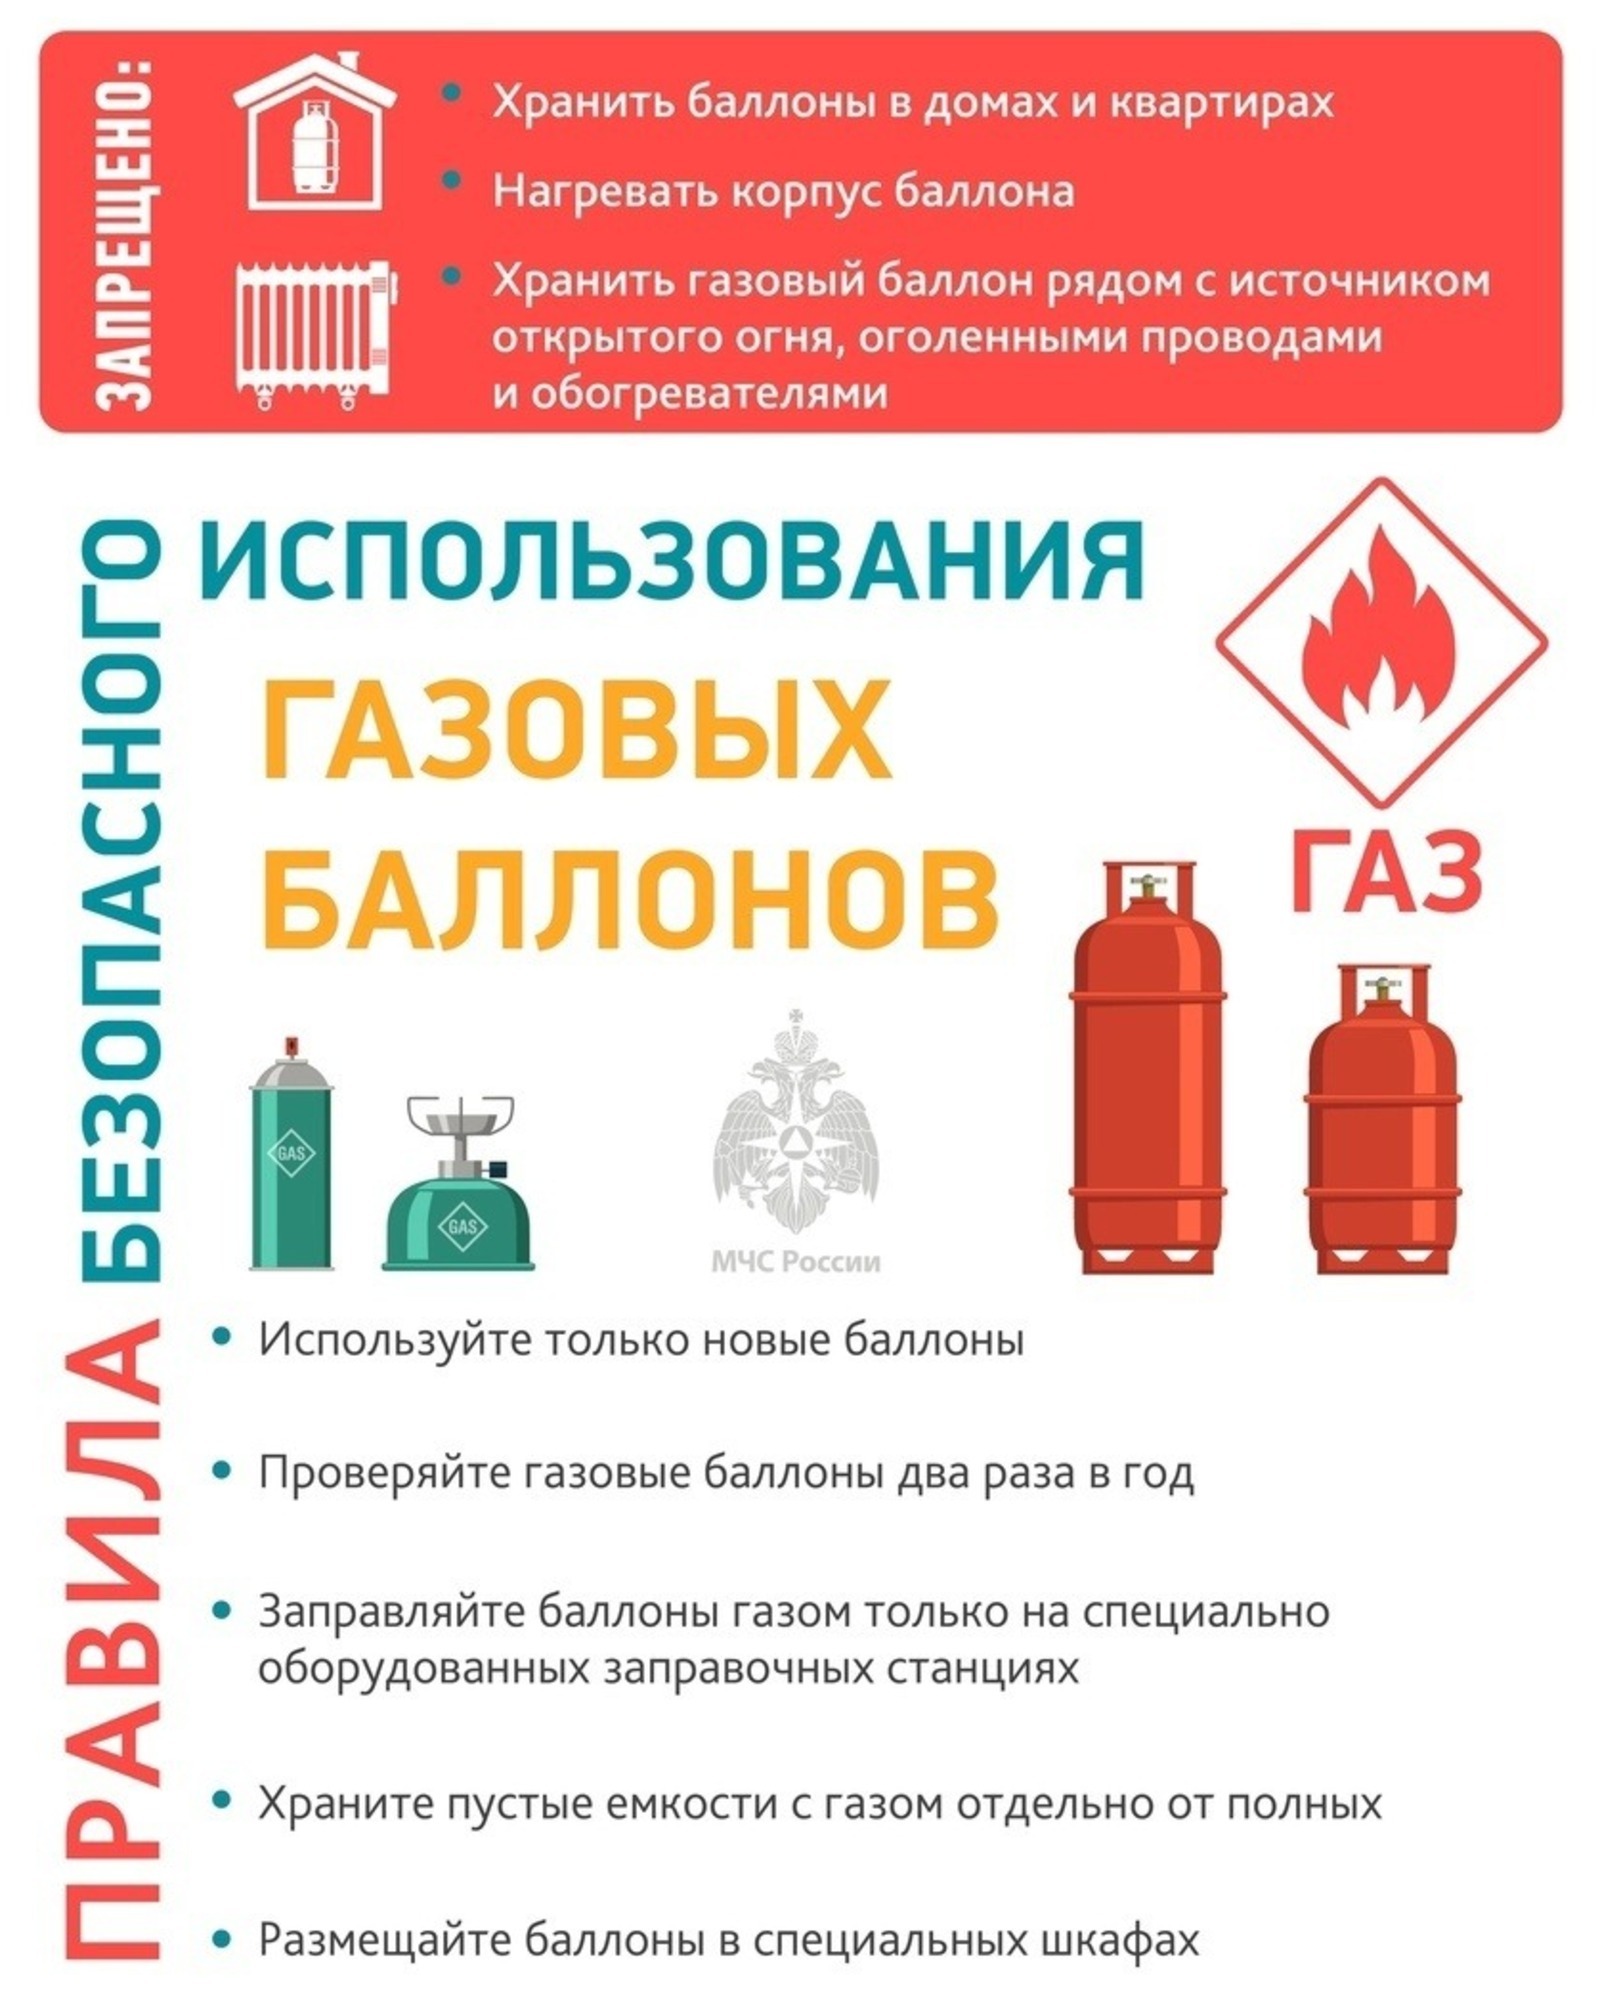 МЧС по Башкирии рекомендует гражданам проверить газовое оборудование в доме